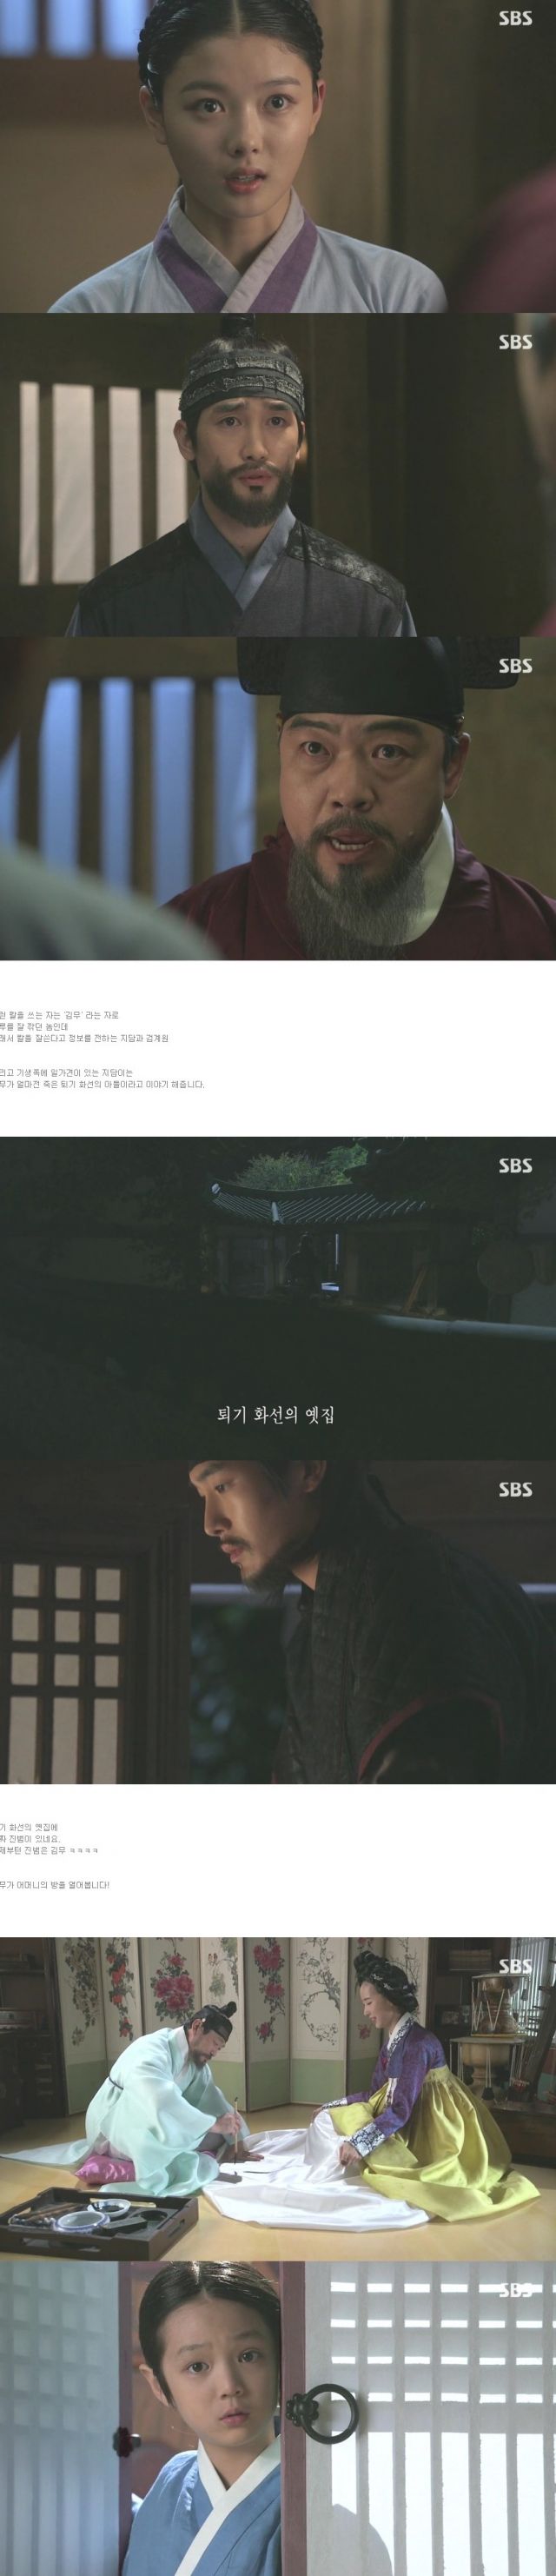 episode 10 captures for the Korean drama 'Secret Door'